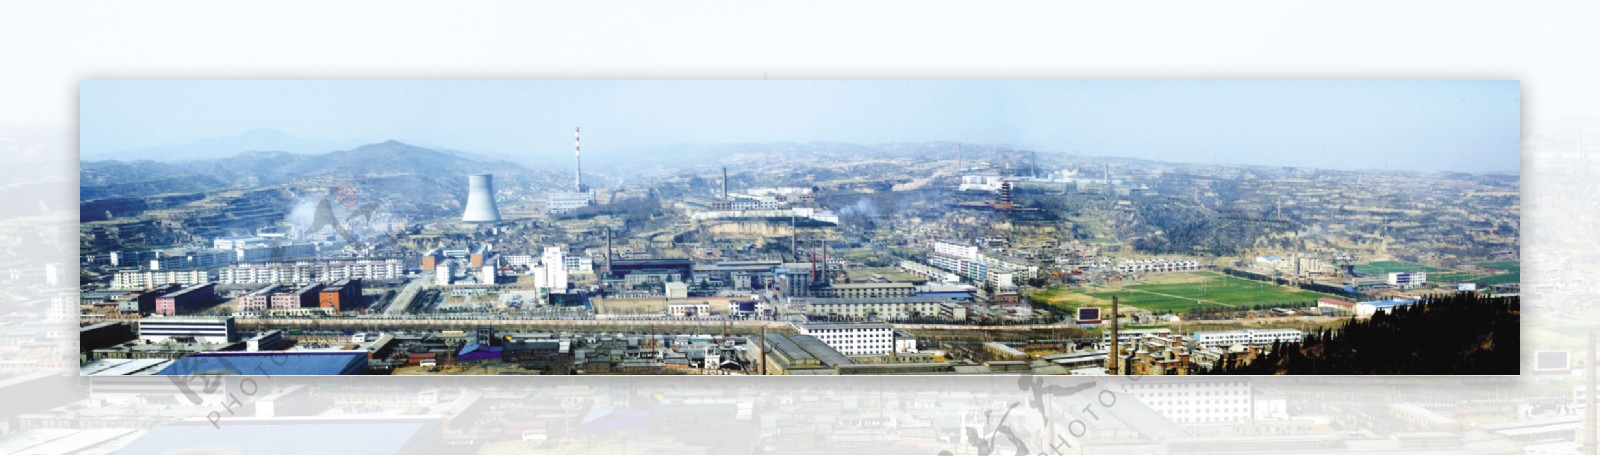 鸟瞰工业全景图图片